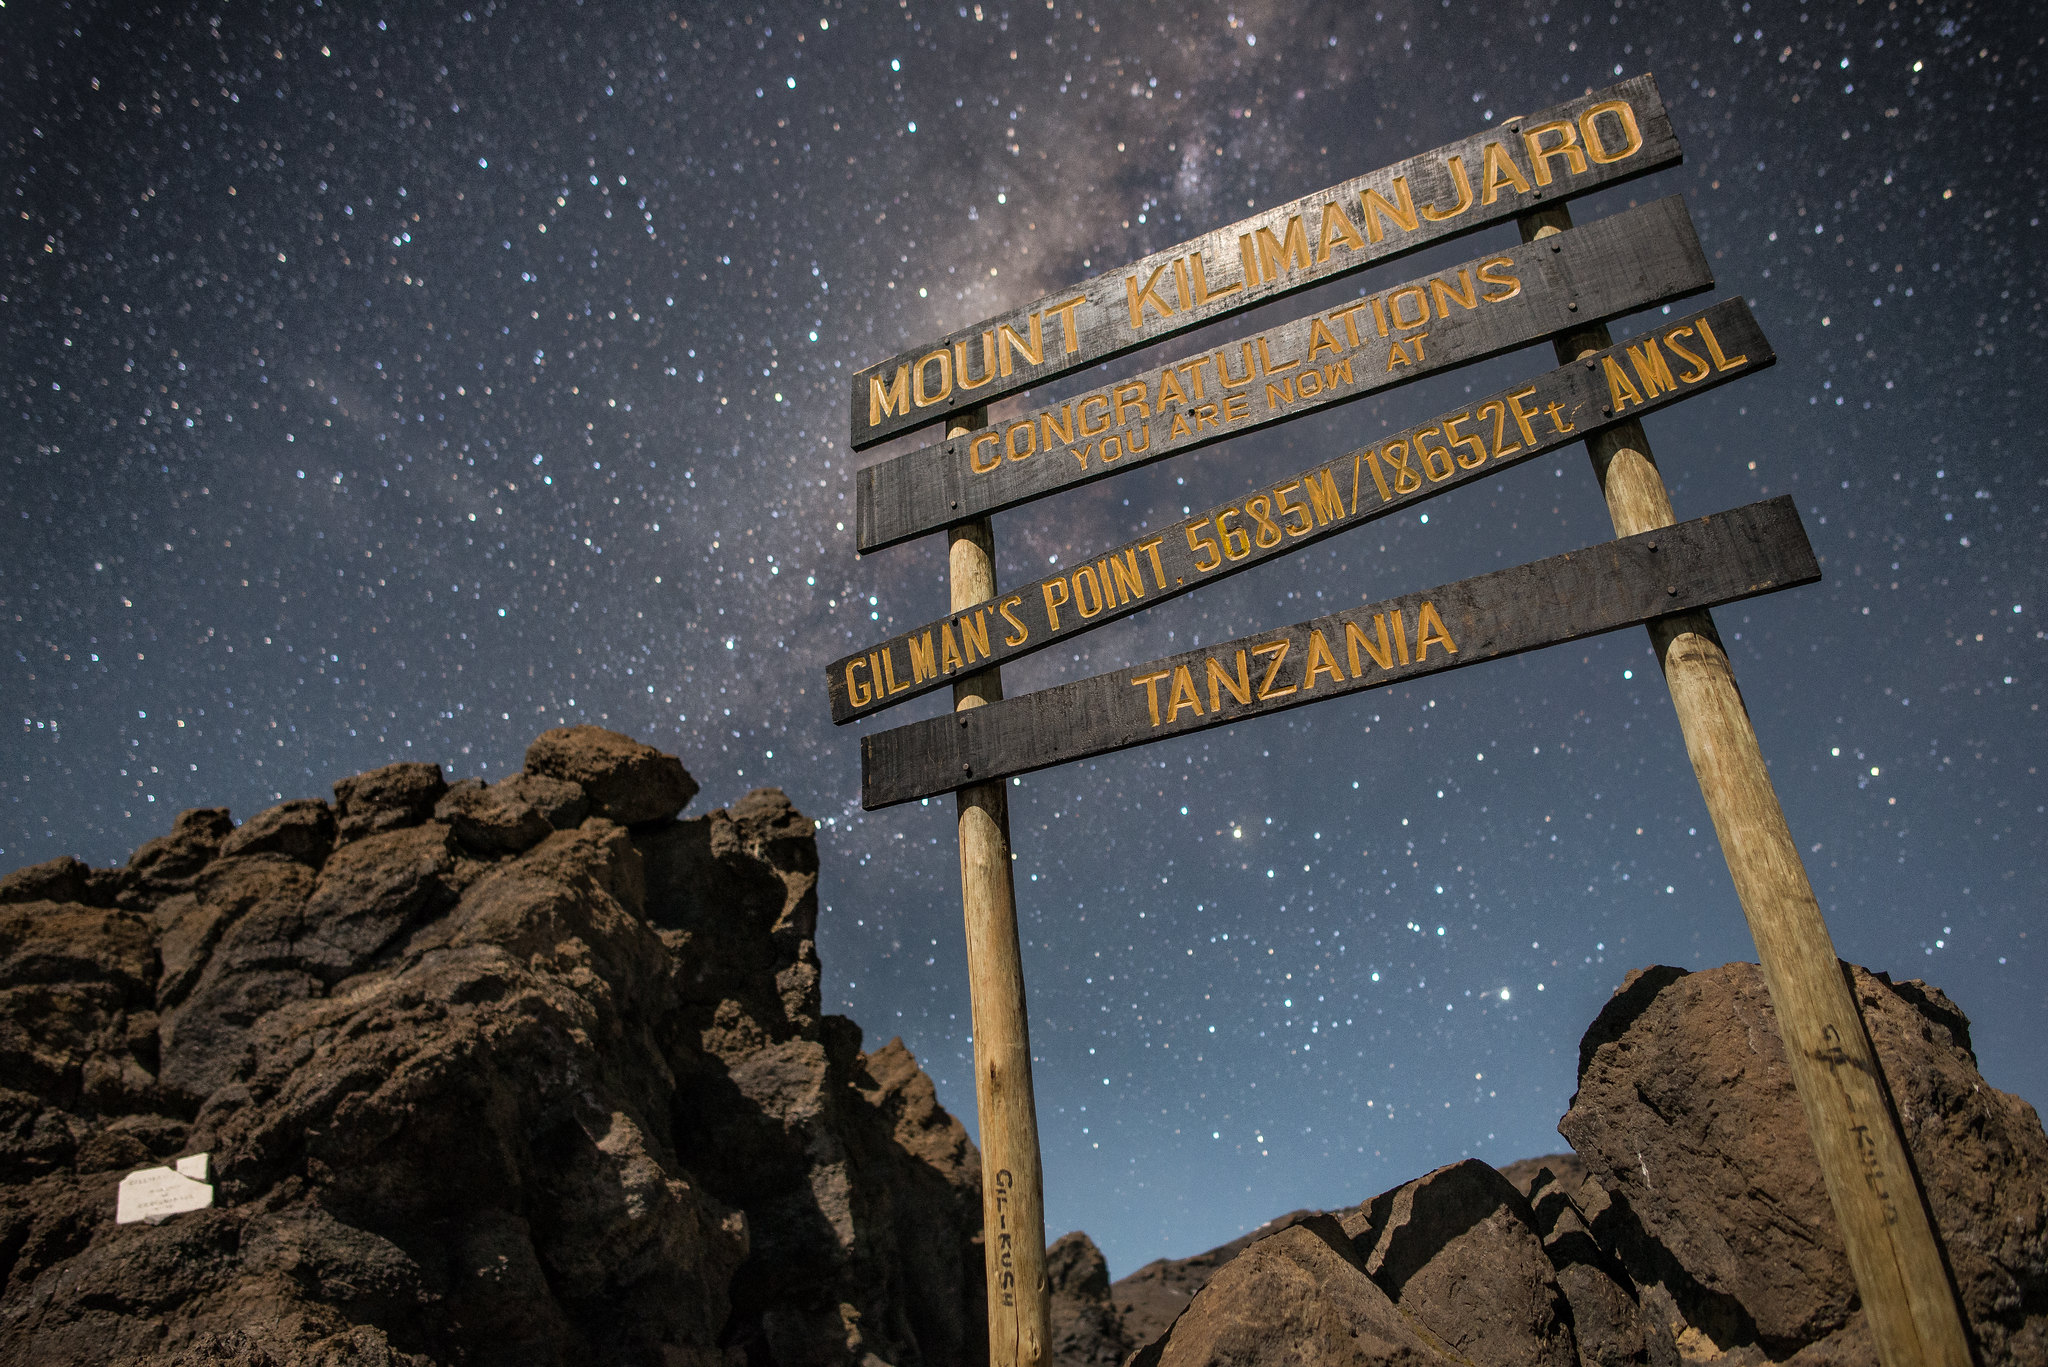 Gilman’s Point, Mount Kilimanjaro